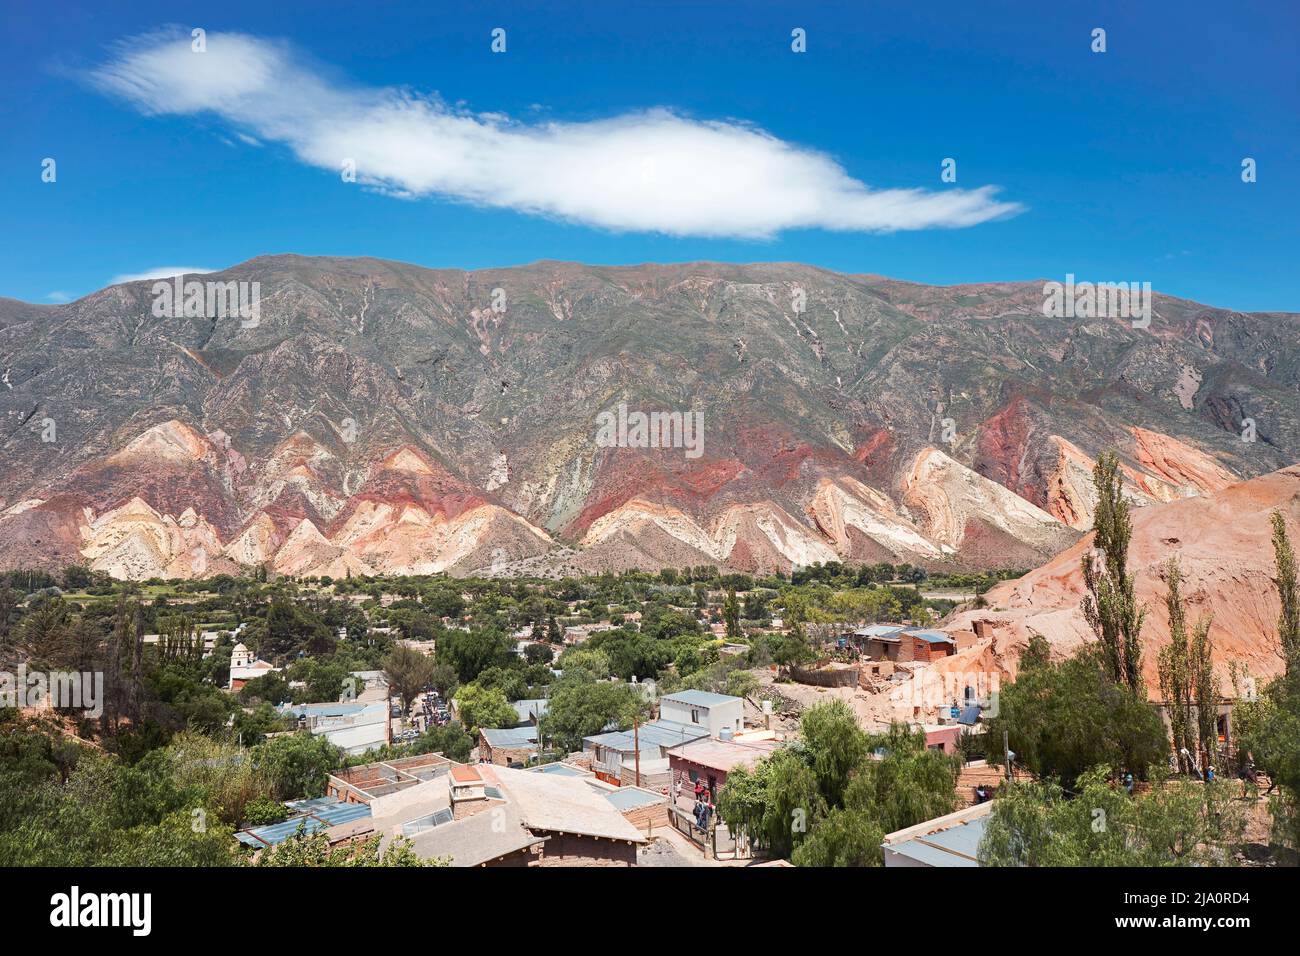 Die kleine Stadt Maimara mit ihren bunten Cerro 'Paleta del Pintor' Bergen im Hintergrund, Provinz Jujuy, Argentinien. Stockfoto